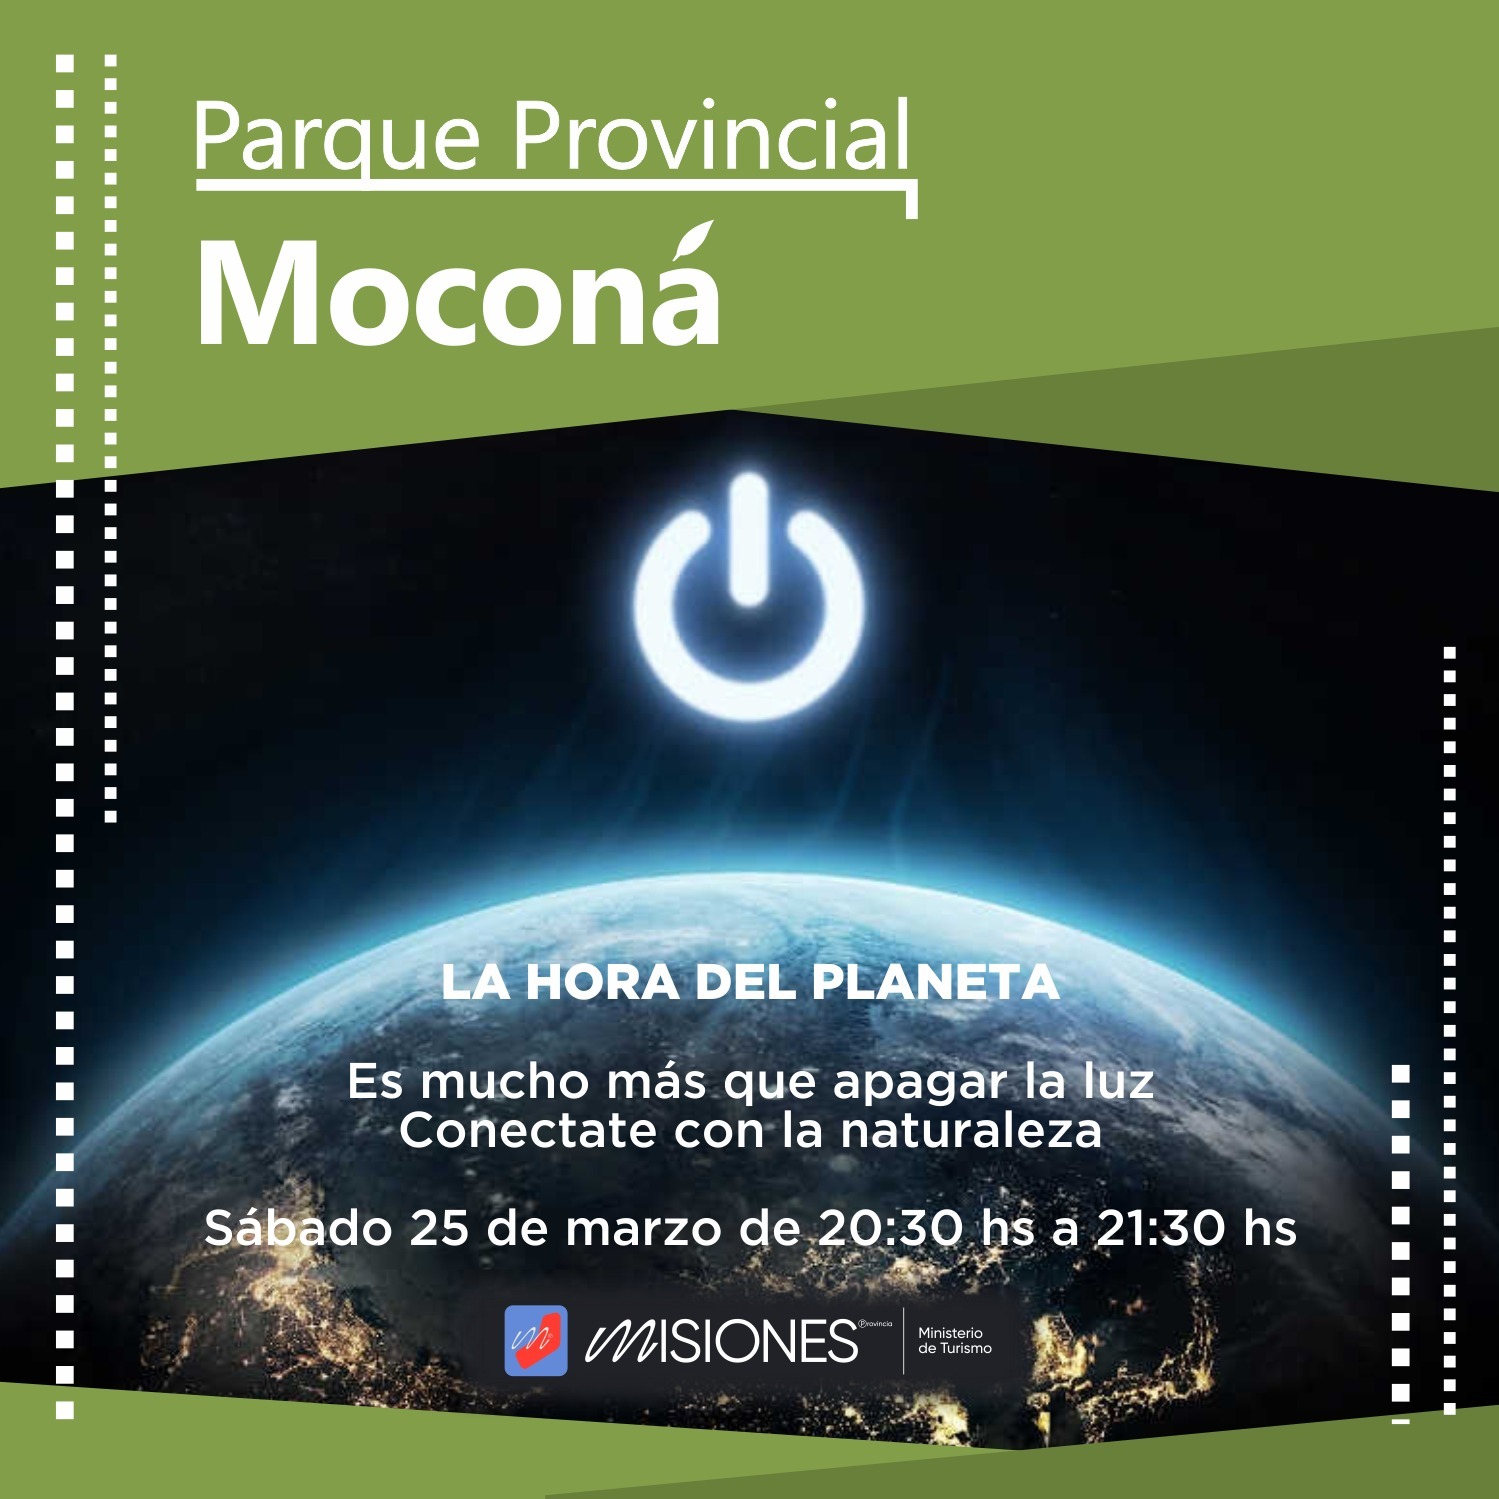 Los Parques Provinciales misioneros se suman a la Hora del Planeta